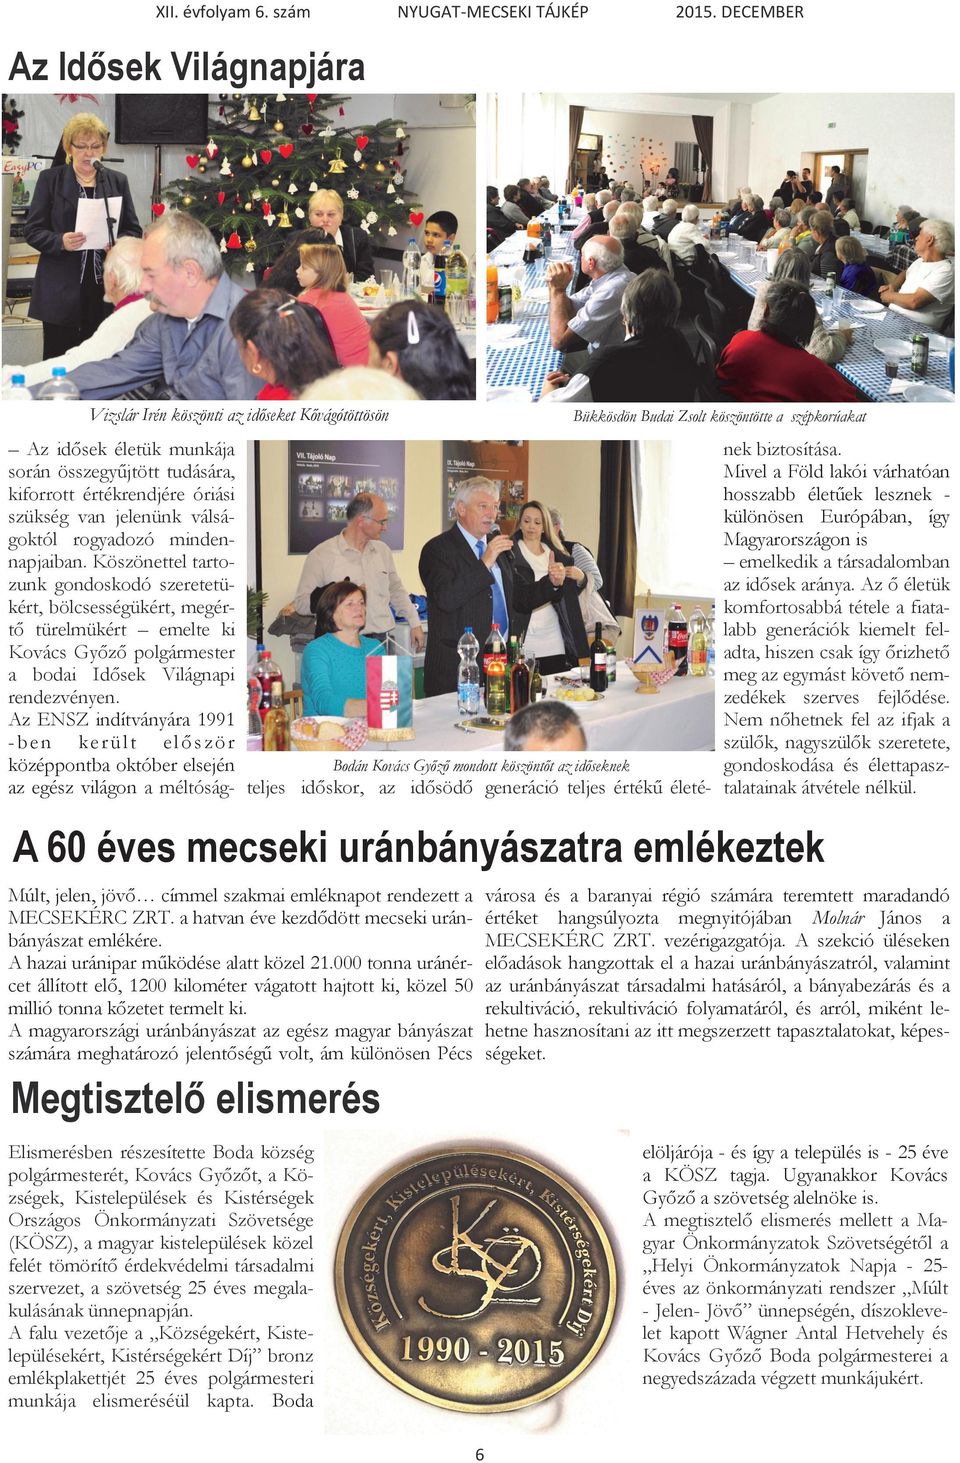 Köszönettel tartozunk gondoskodó szeretetükért, bölcsességükért, megértő türelmükért emelte ki Kovács Győző polgármester a bodai Idősek Világnapi rendezvényen.